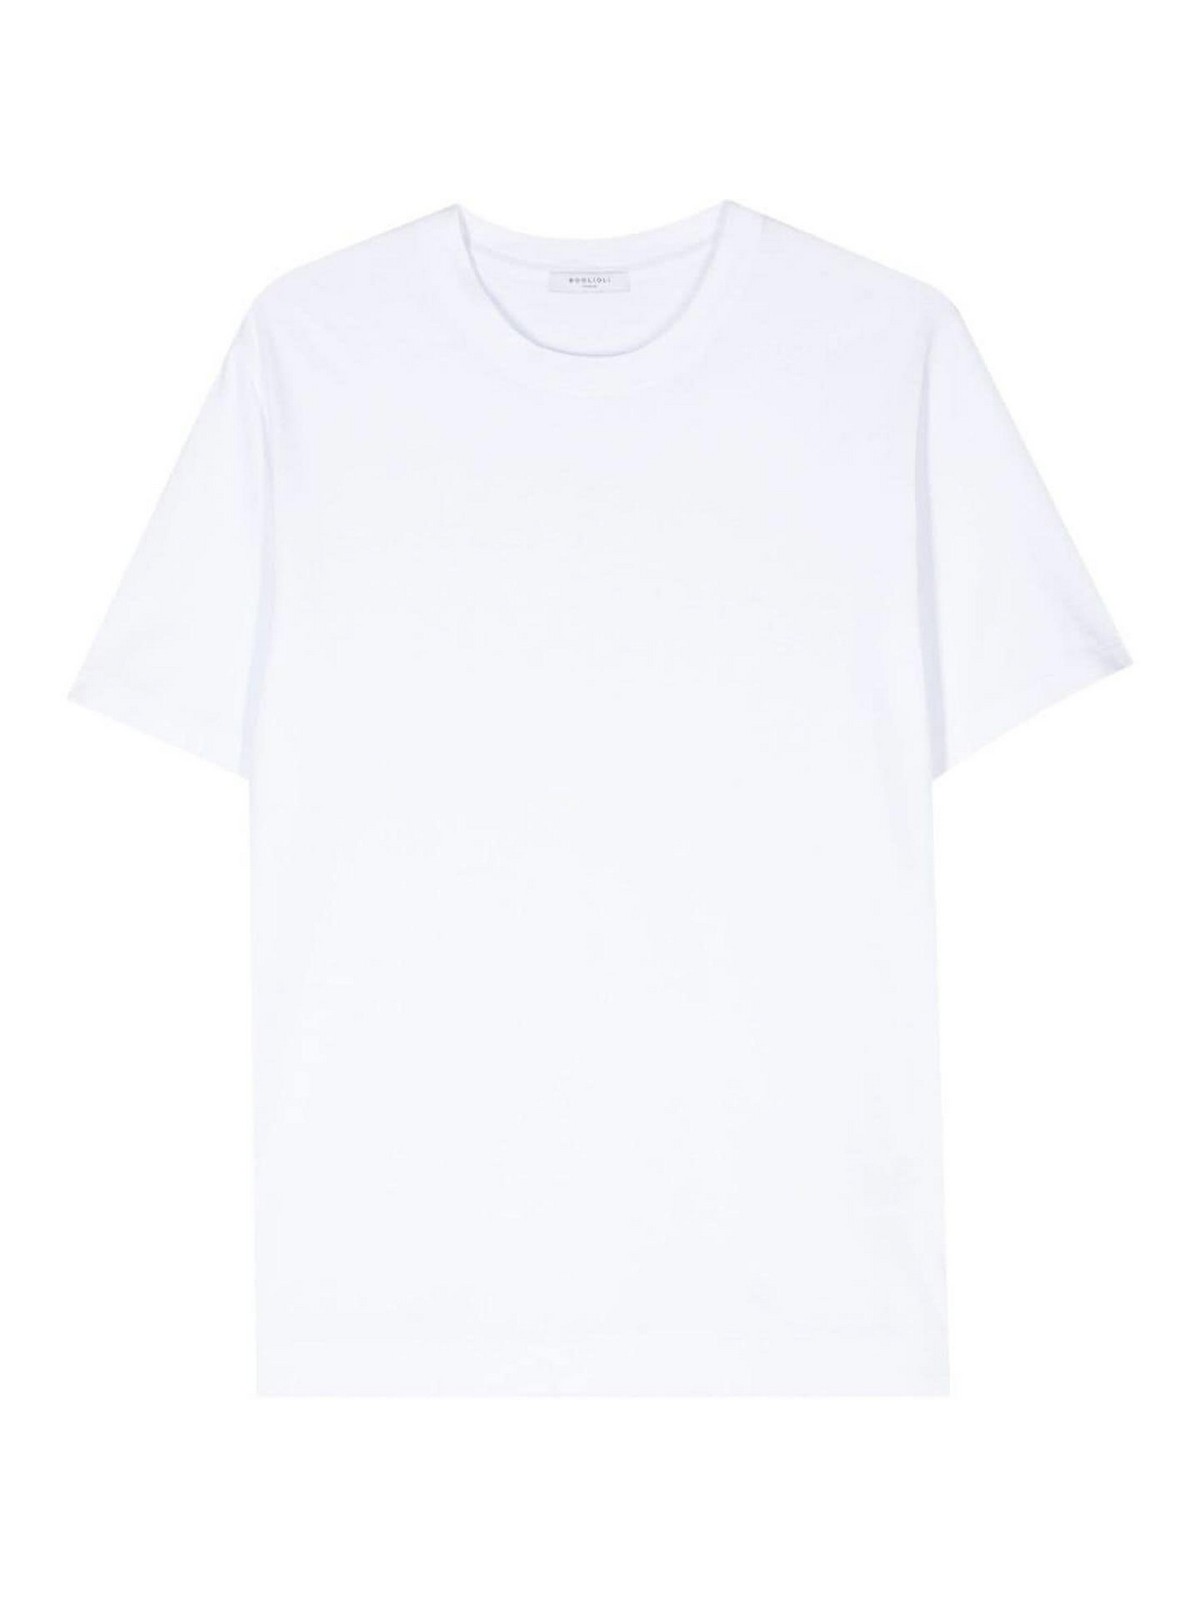 Boglioli Crew-neck Cotton T-shirt In White Color